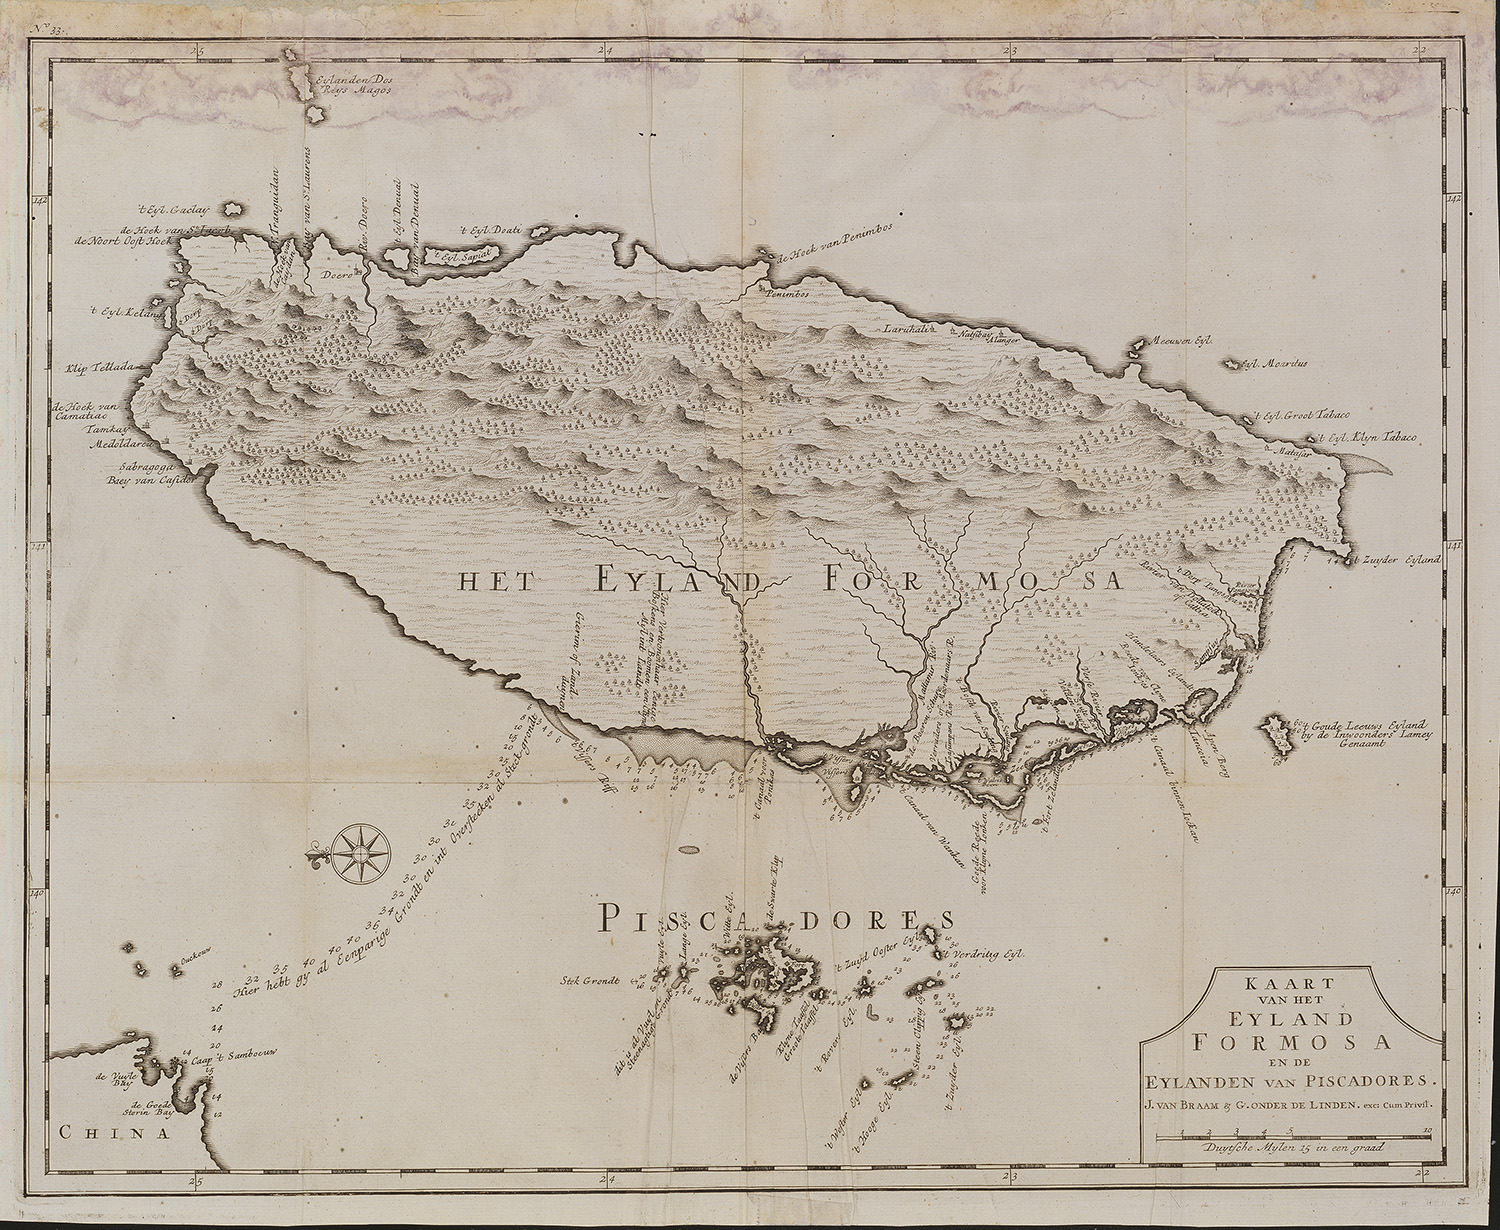 Kaart van het Eyland Formosa en de Eylanden van Piscadores